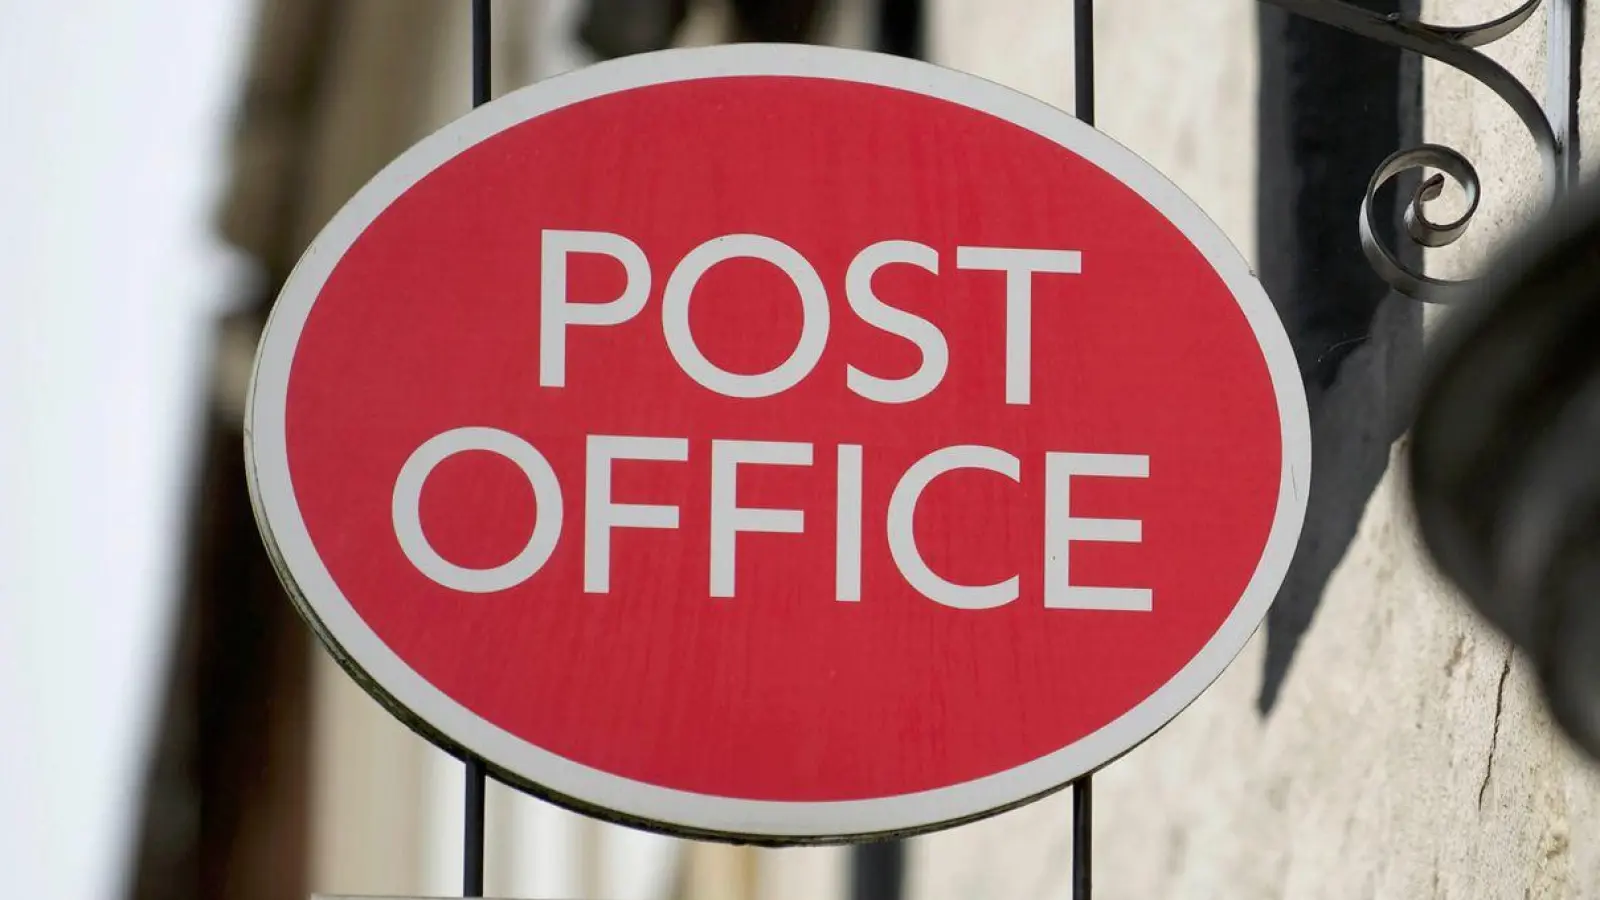 Hunderte selbstständige Filialleiter des früheren Staatsunternehmens Post Office wurden beschuldigt, sich zu bereichern. (Foto: Sandy Young/PA Wire/dpa)